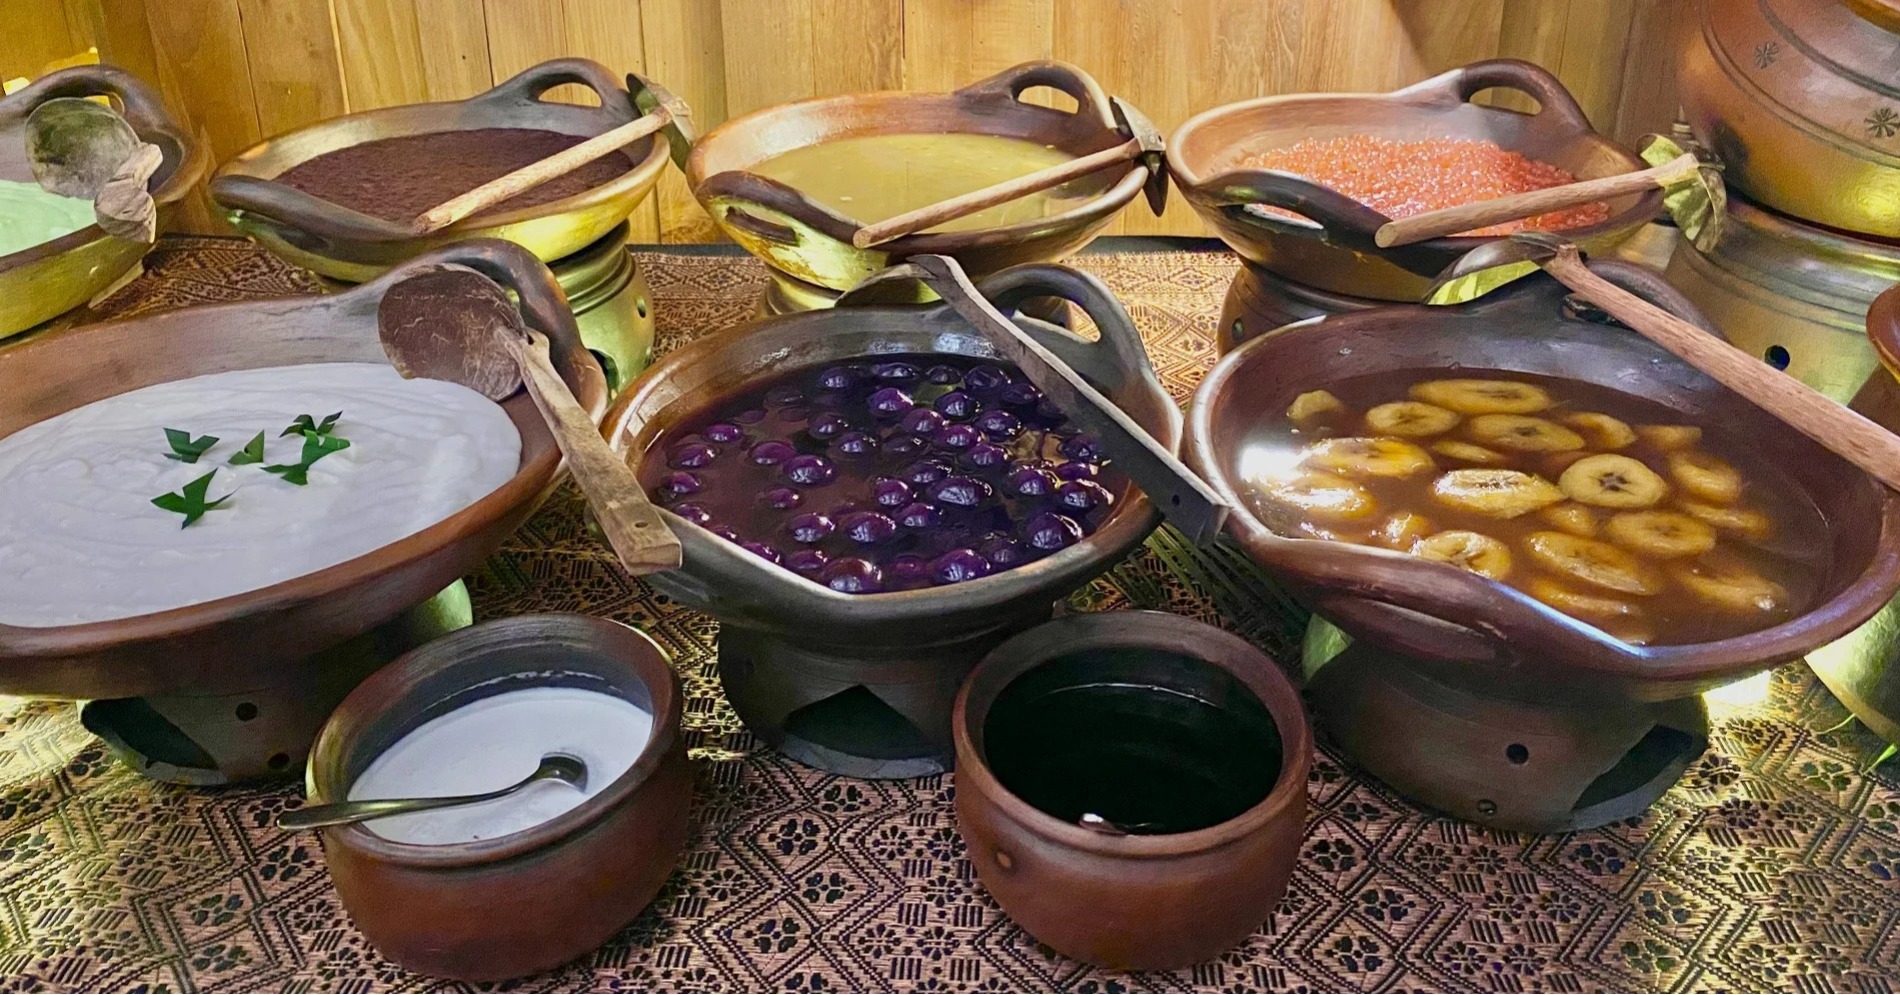 Hidangan penutup restoran Smriti selama bulan ramadan (Sumber foto: Hypeabis.id/Amanda Syavira)